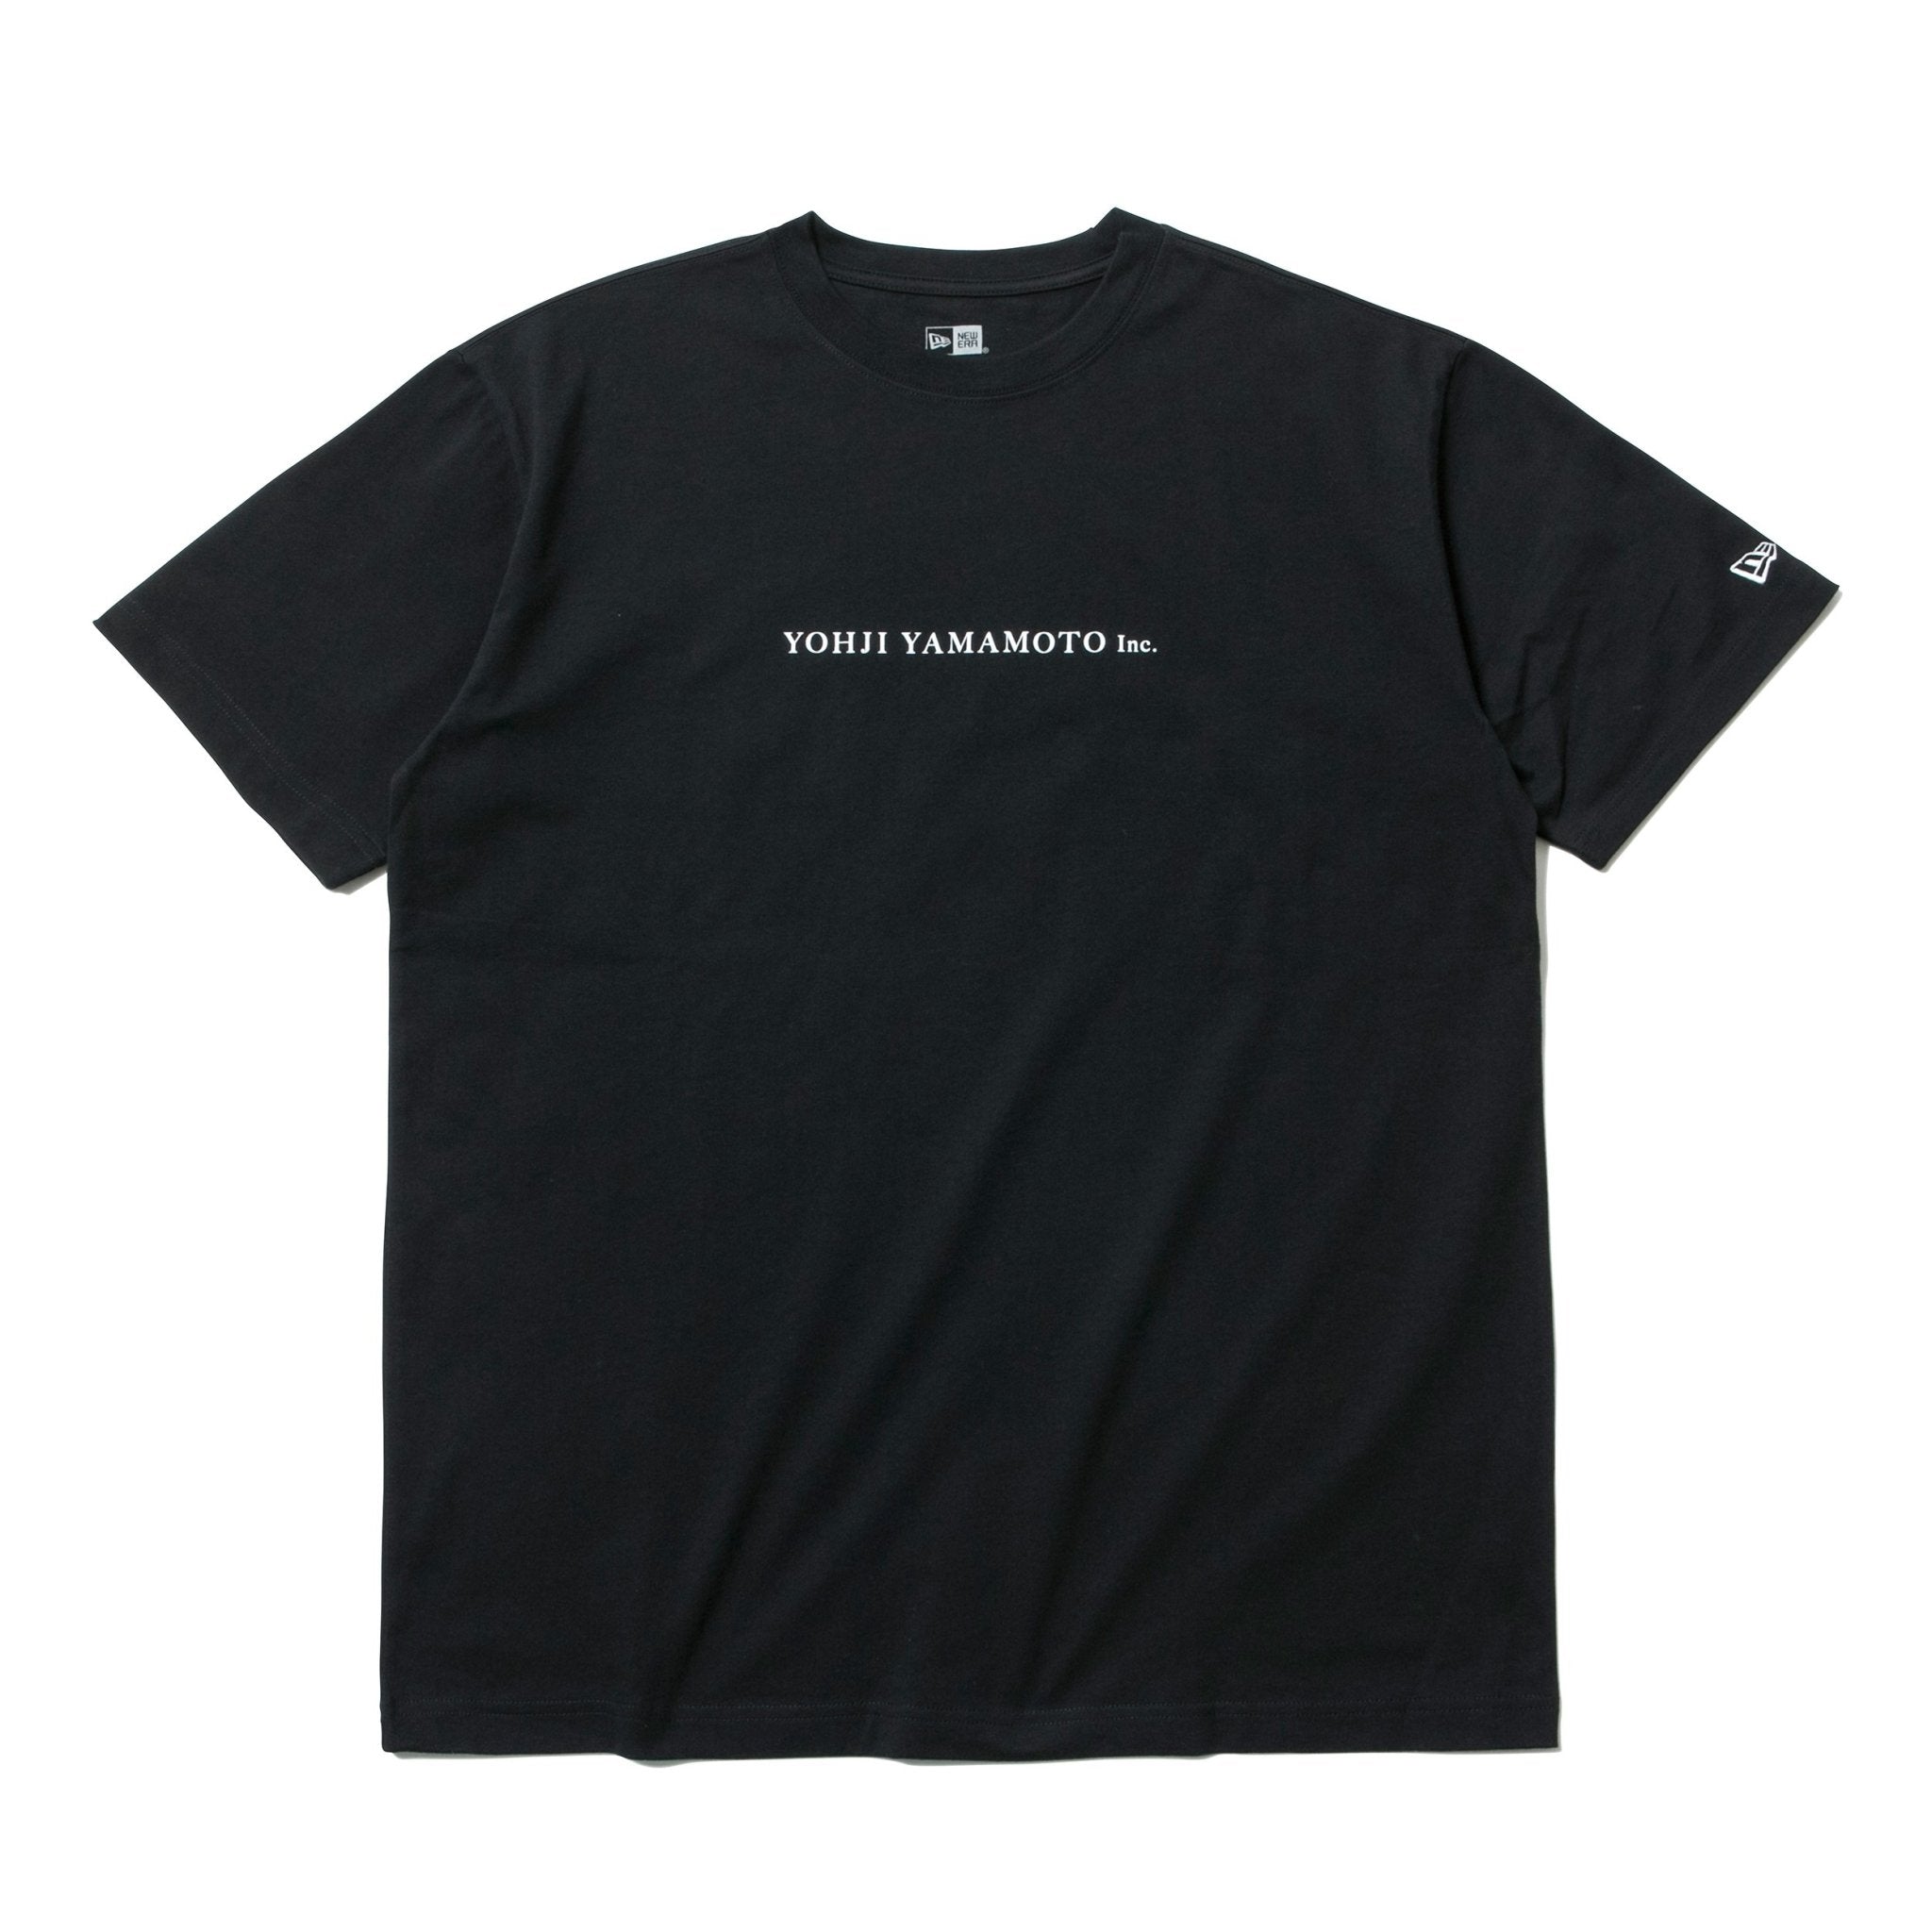 コットン Tシャツ SS20 Yohji Yamamoto Inc. ブラック